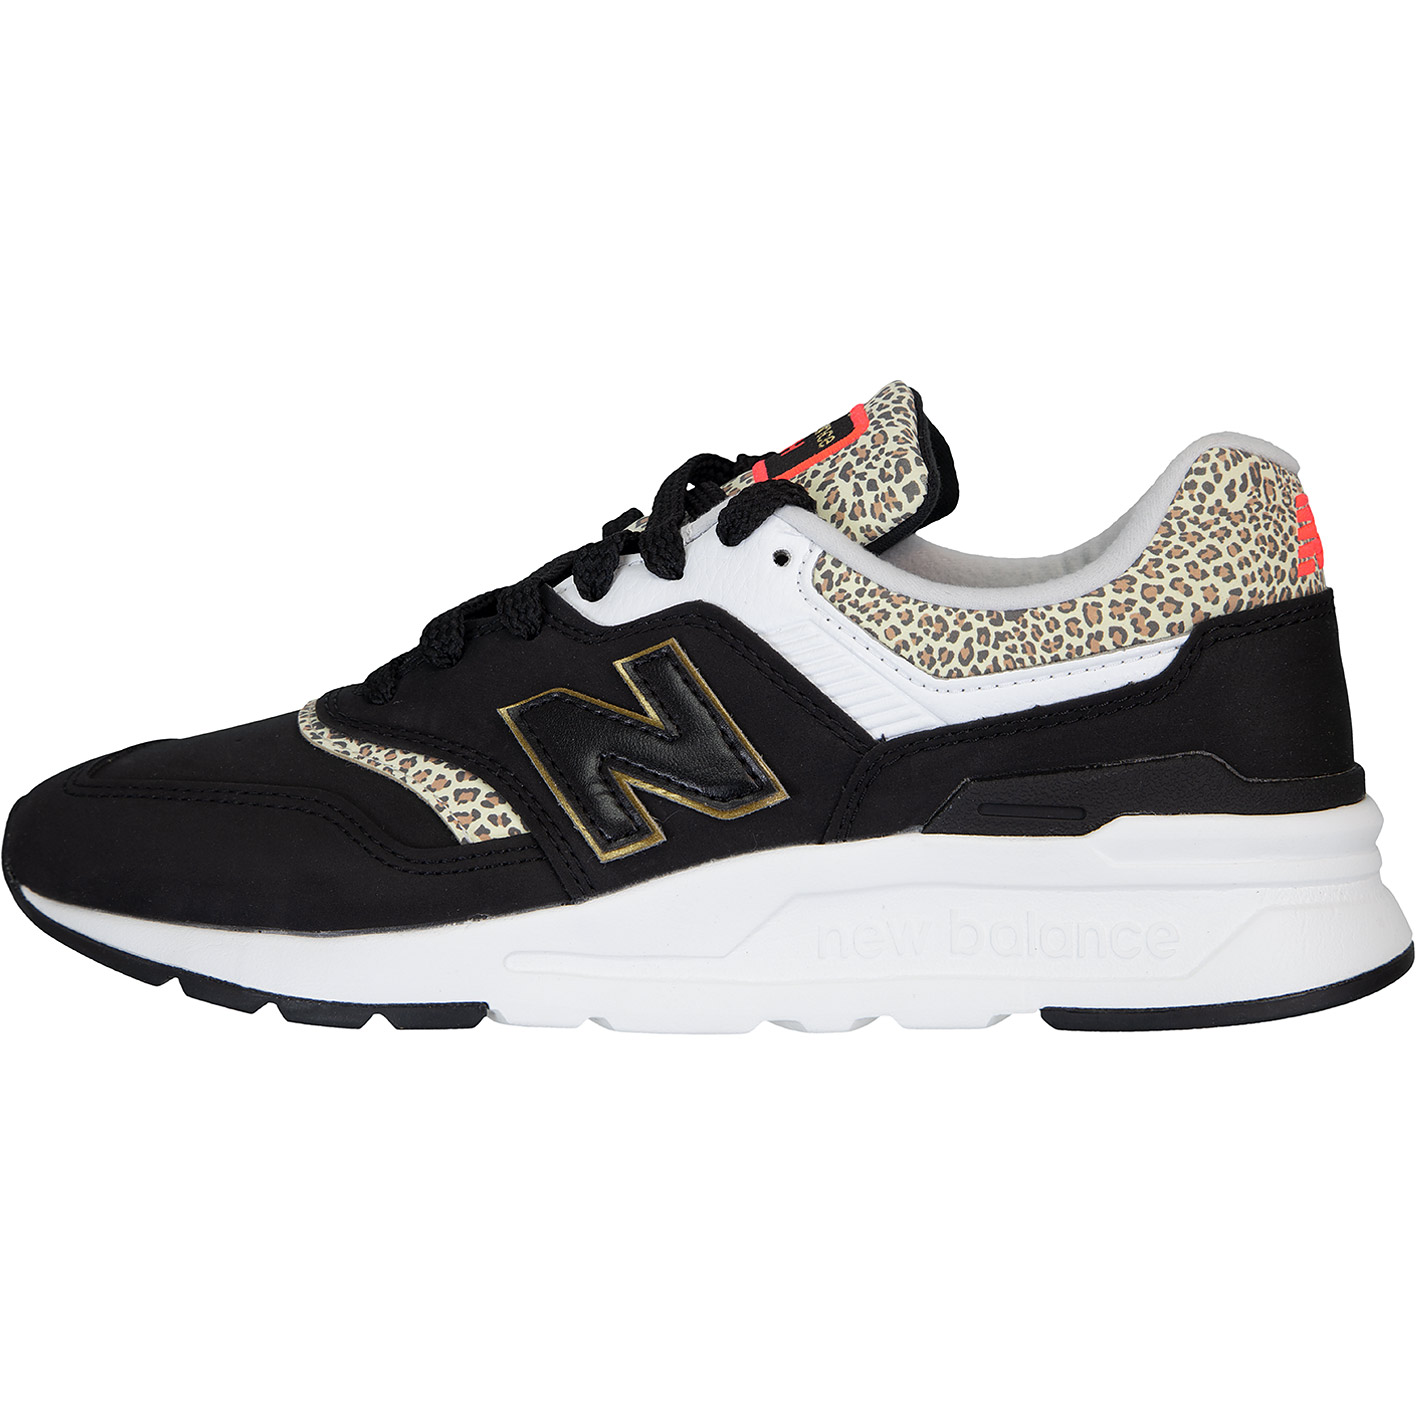 ☆ New Balance 997H Damen Sneaker Schuhe schwarz - hier bestellen!